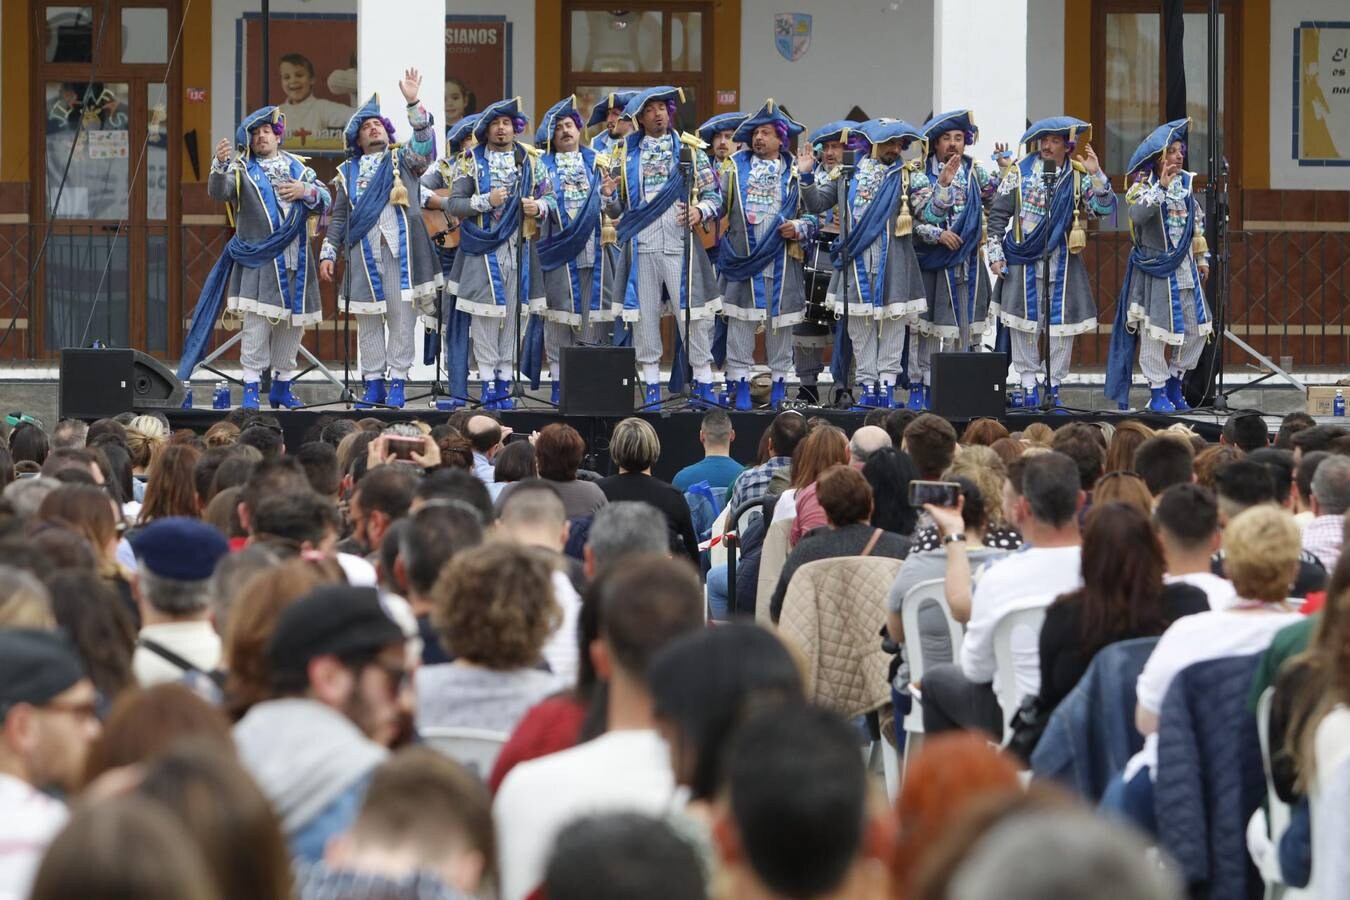 El desembarco del Carnaval de Cádiz en Salesianos, en imágenes